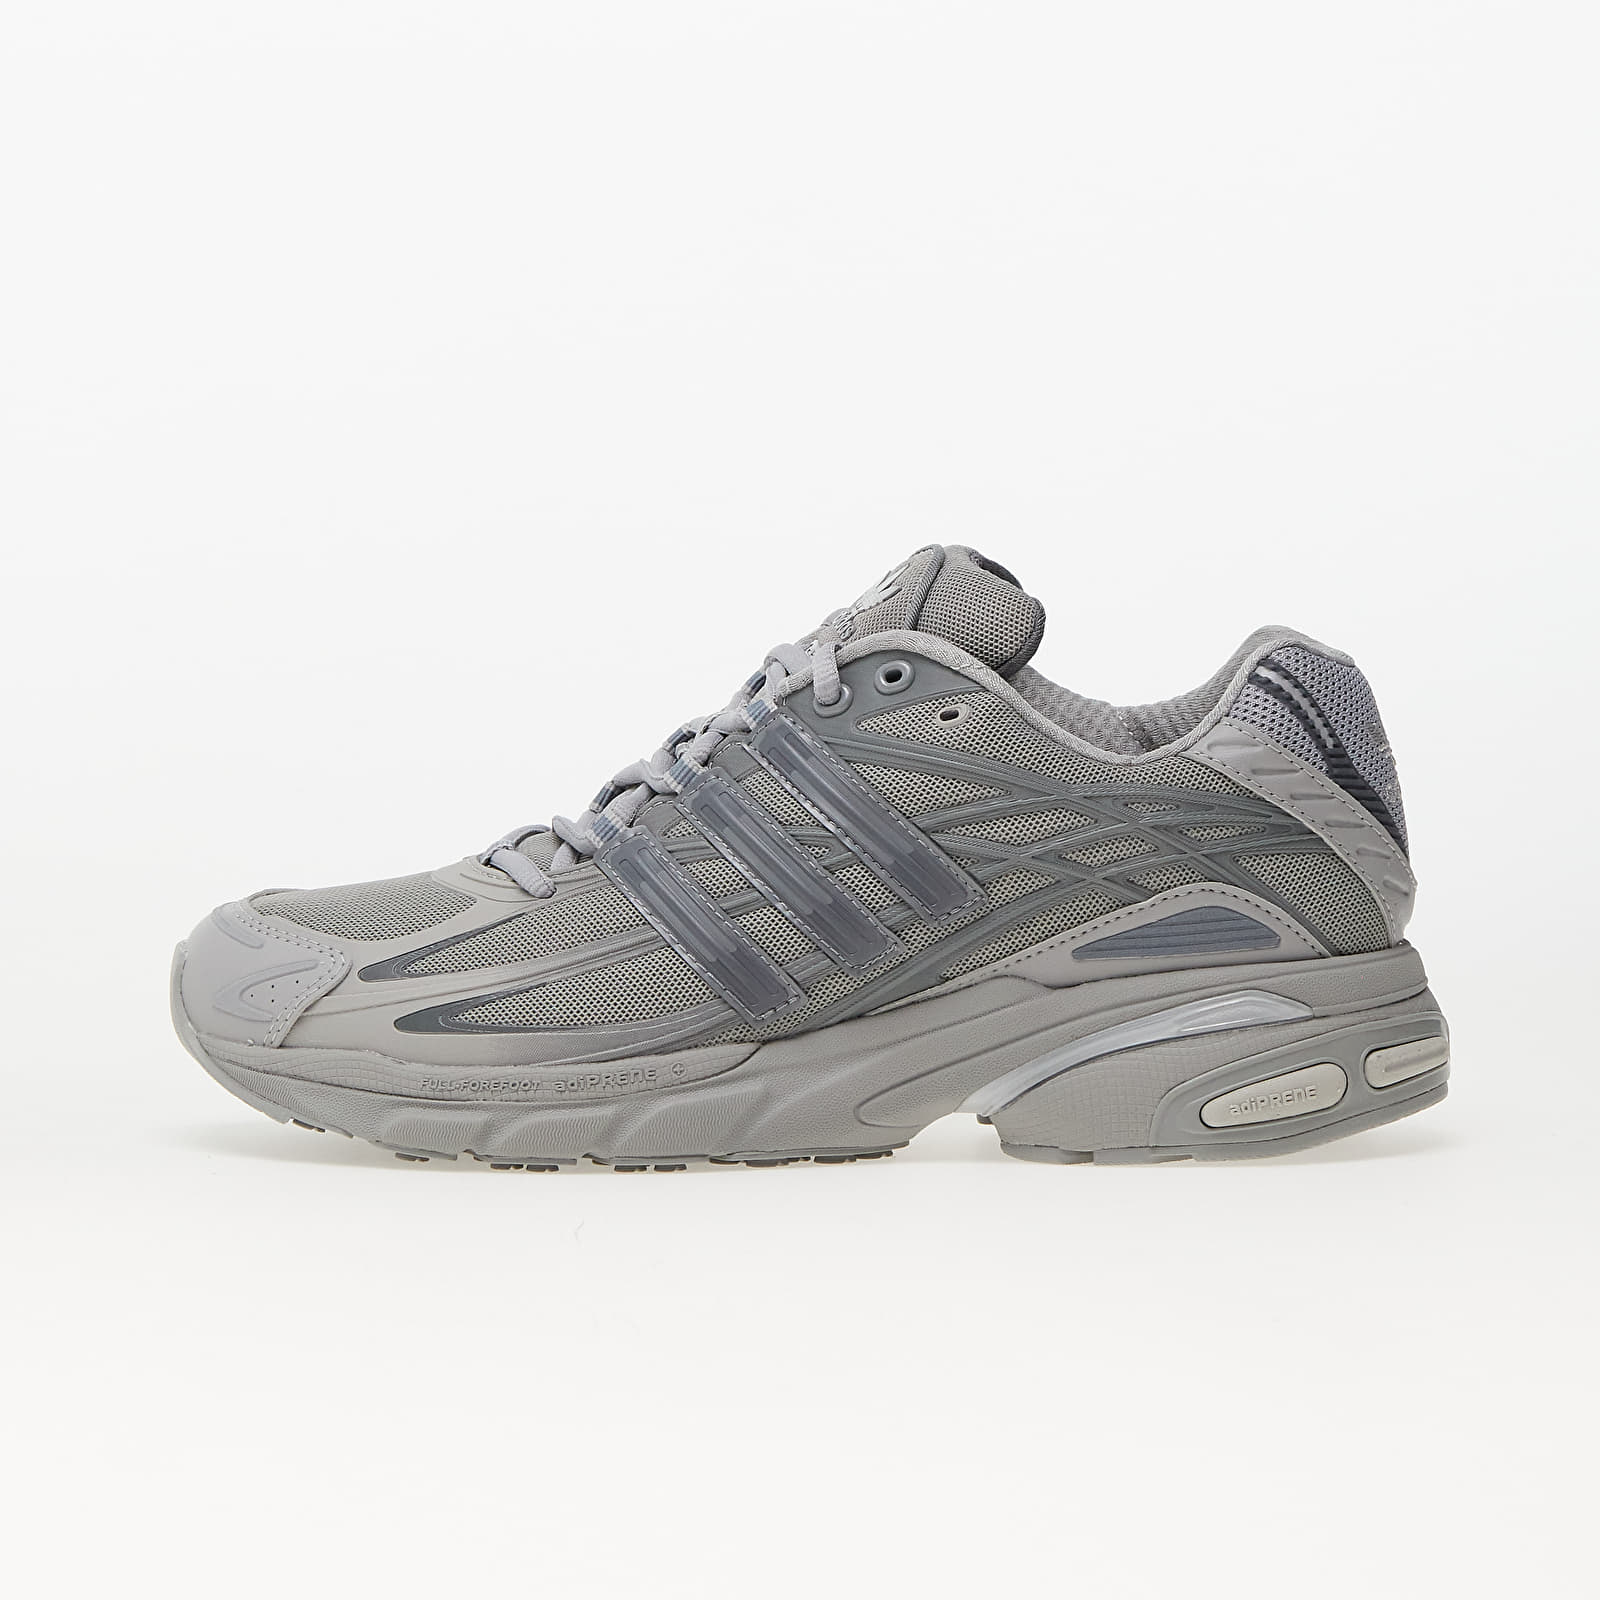 Herren Sneaker und Schuhe adidas Adistar Cushion Multi Solid Grey/ Grey Four/ Grey Three